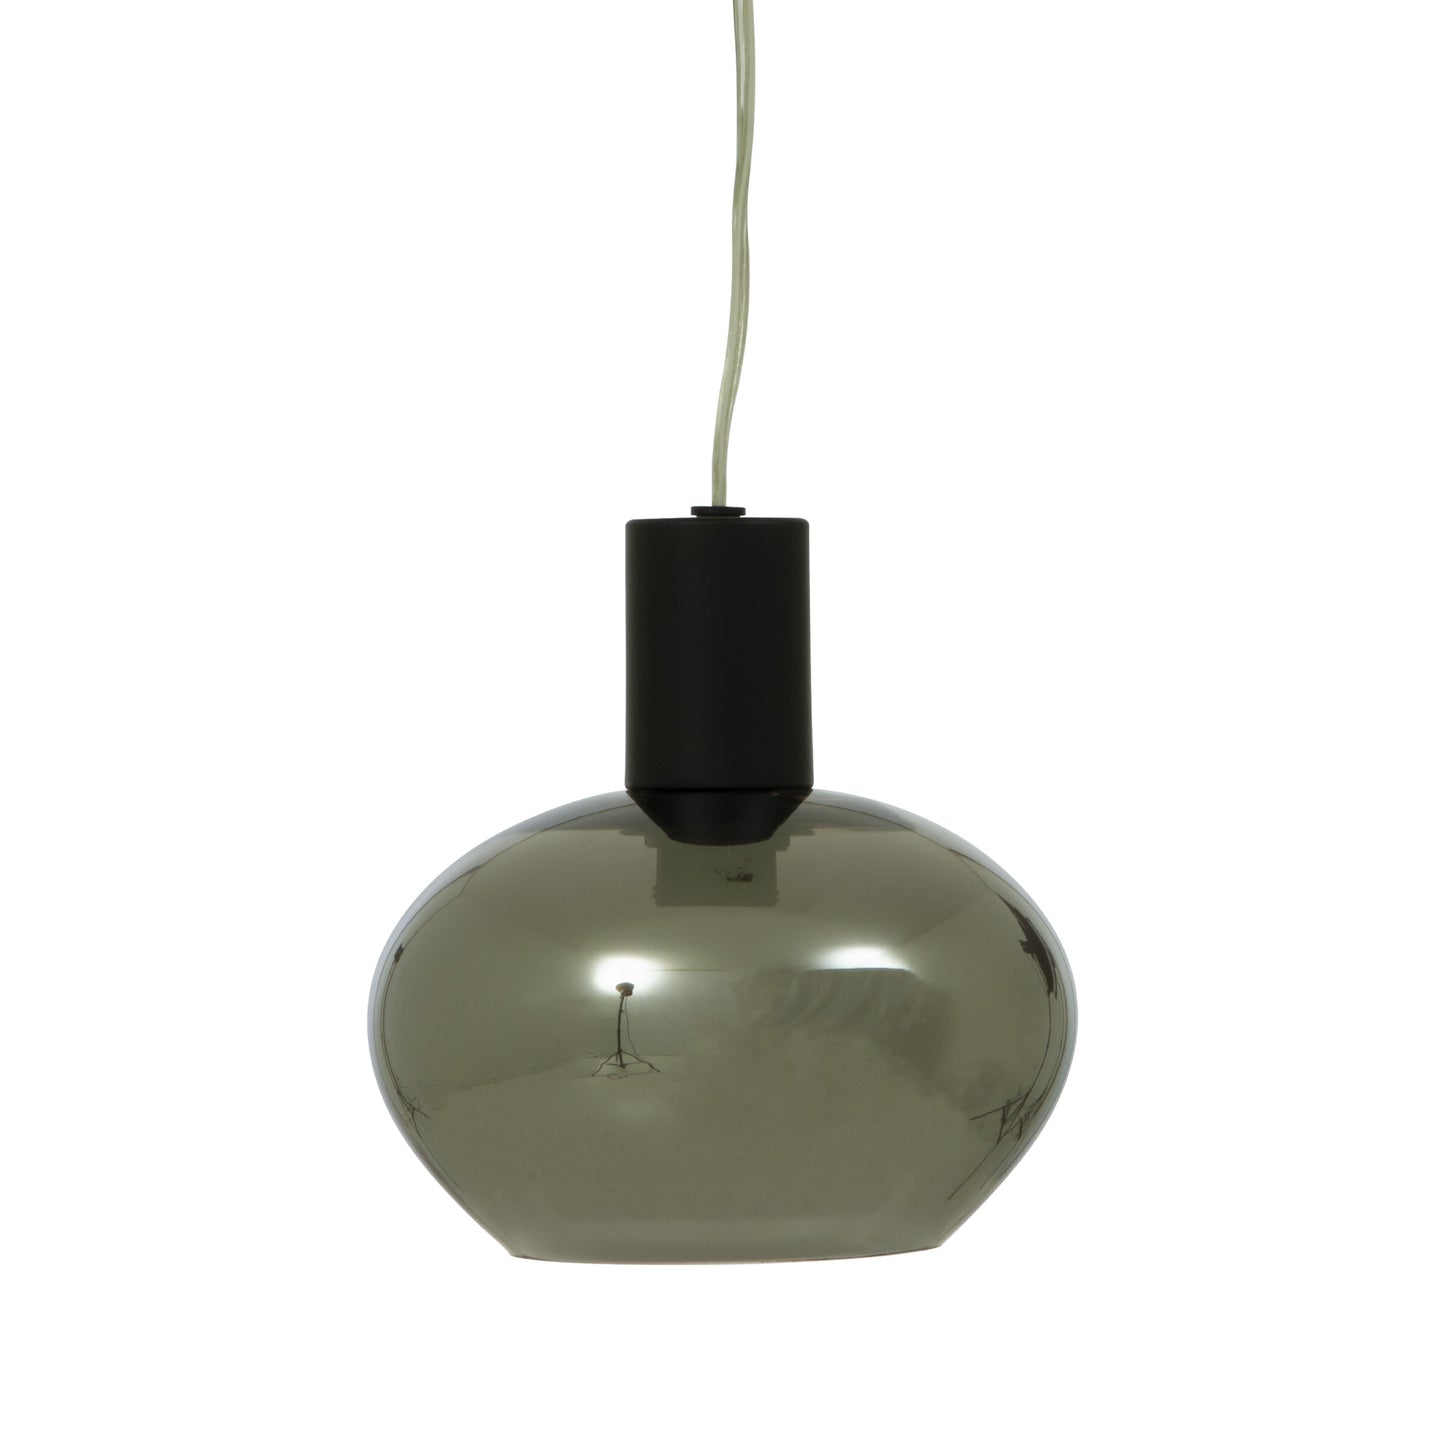 Bell vinduspendel i svart metall med skjerm i sotet glass diameter 15cm - Aneta belysning